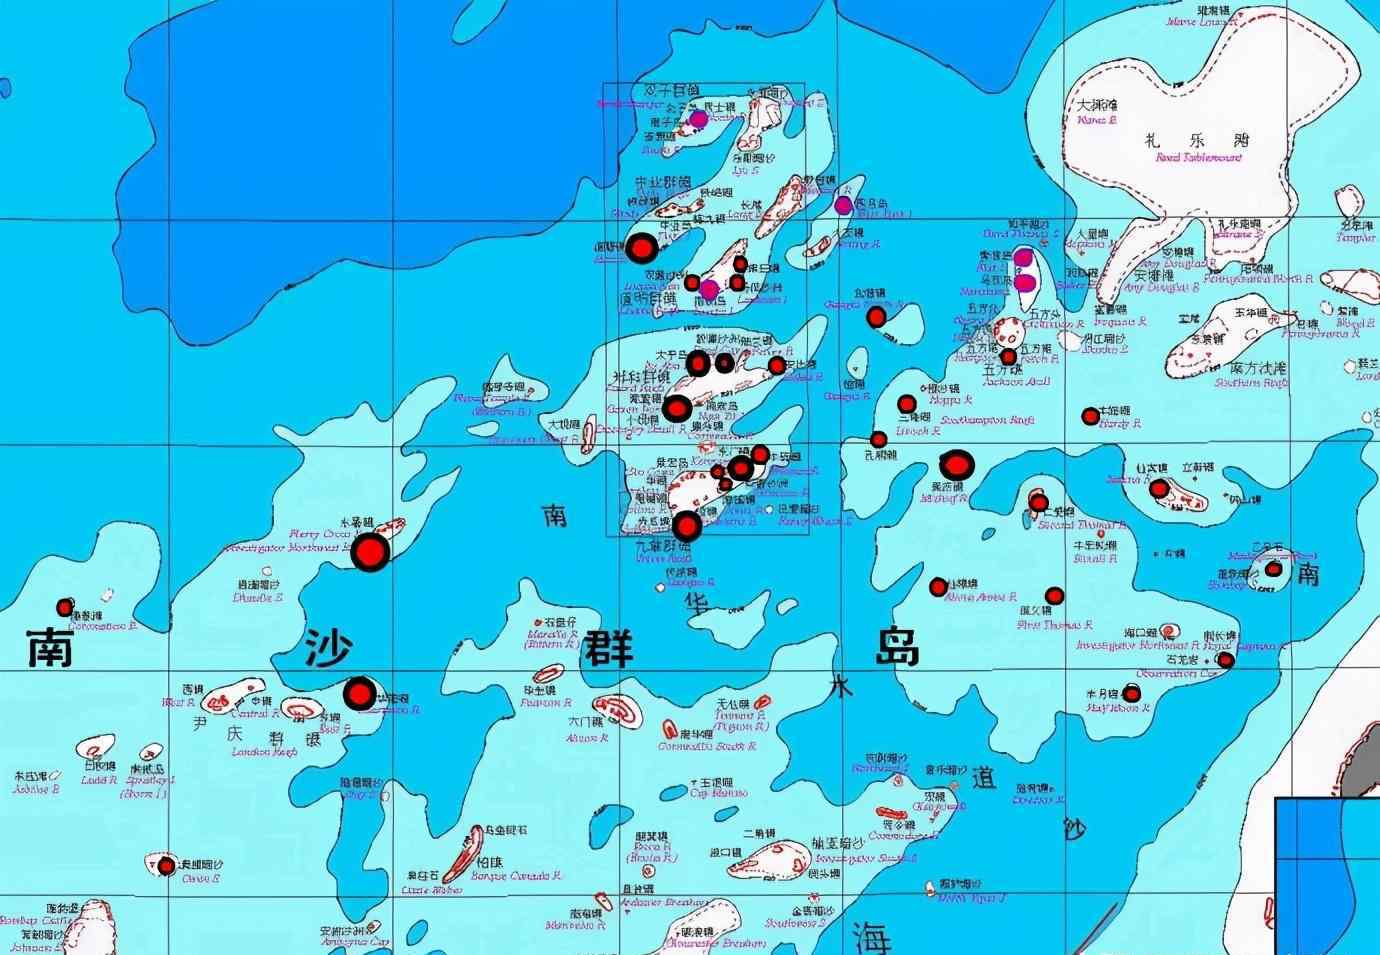 南沙群岛实际控制 中国实际控制南海多少岛礁？这个数字很有参考价值